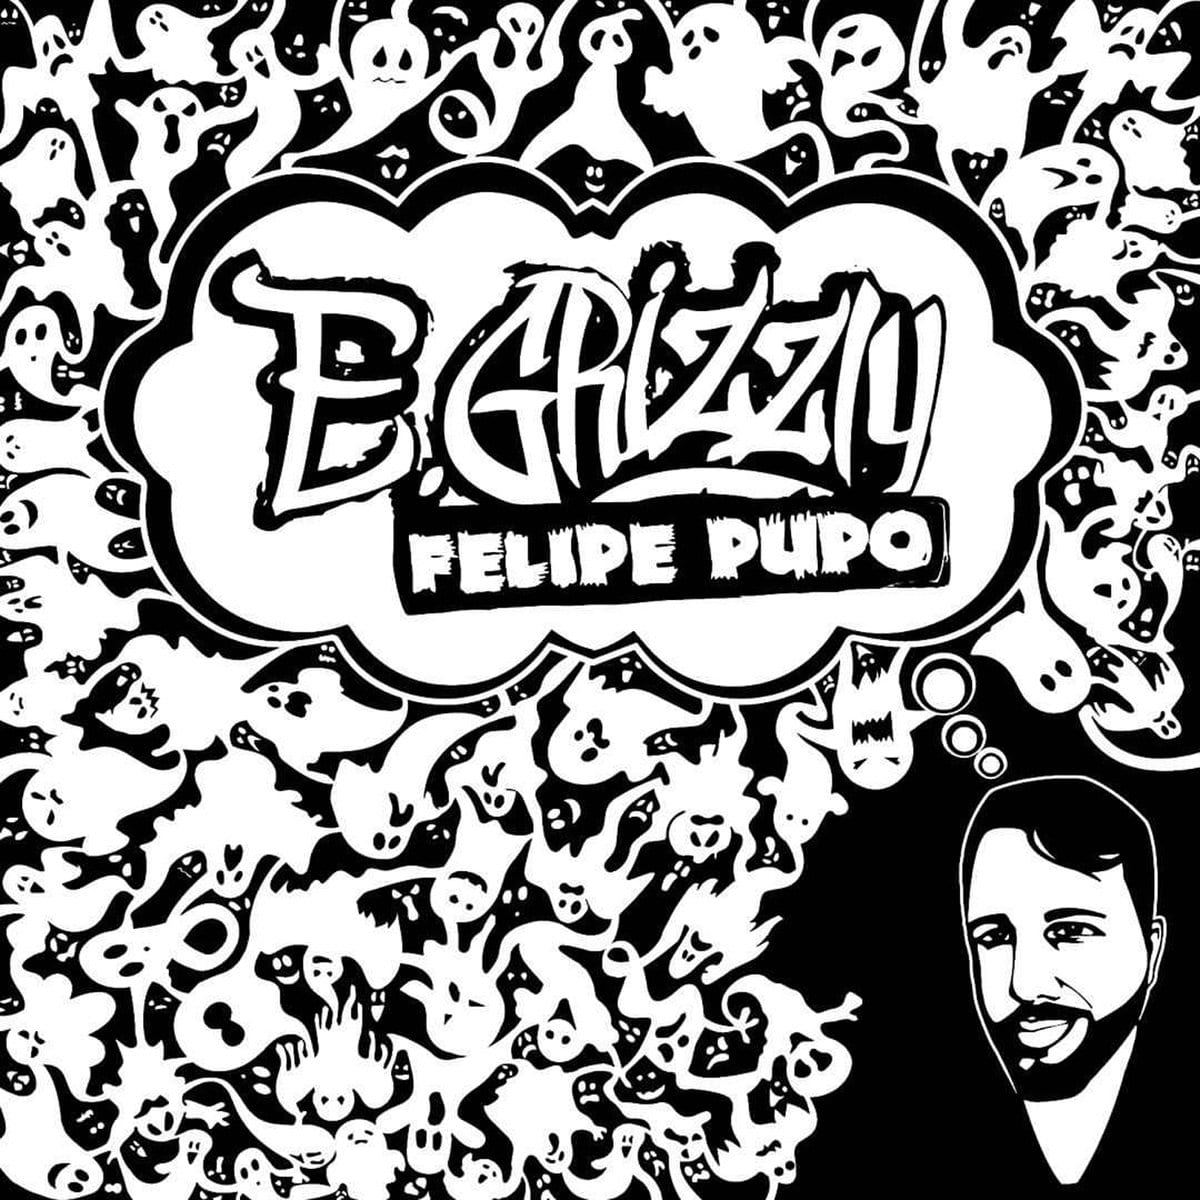 E. Grizzly Drops New Hip Hop/Punk Album - "Felipe Pupo"